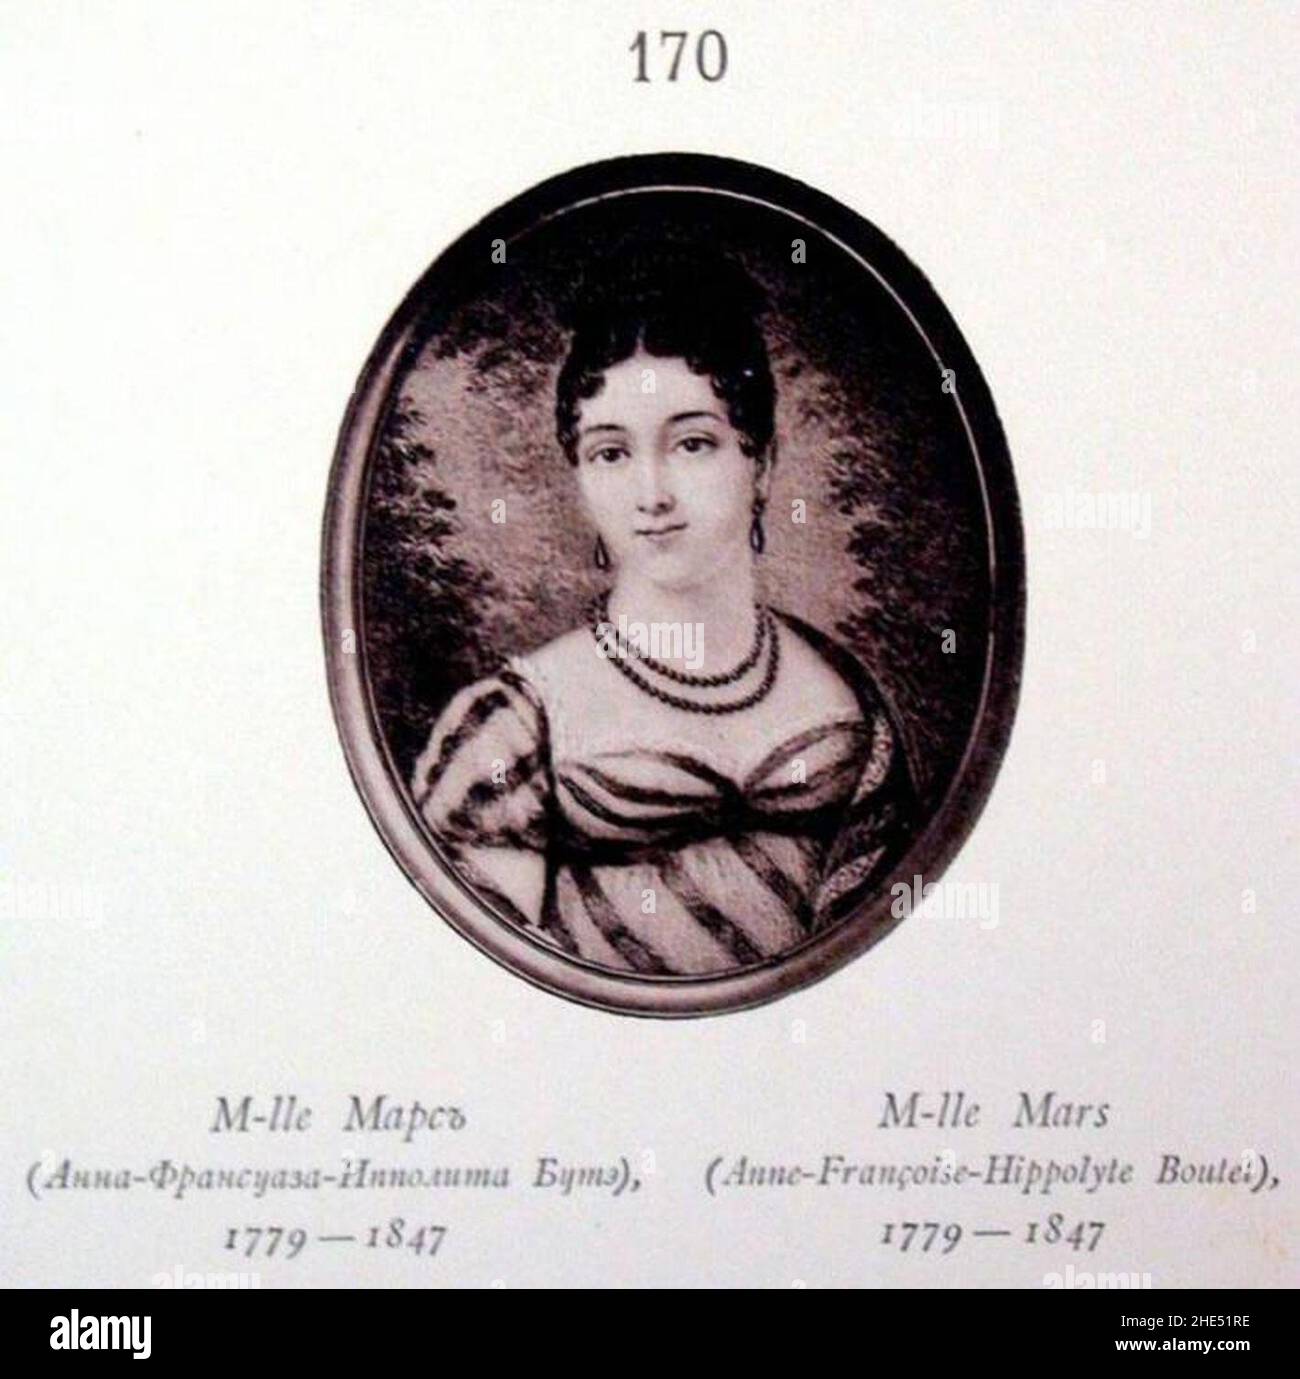 RusPortraits v4-170 M-lle Mars (Anna Frantsuaza Ippolita Bute) 1779-1847. Stock Photo